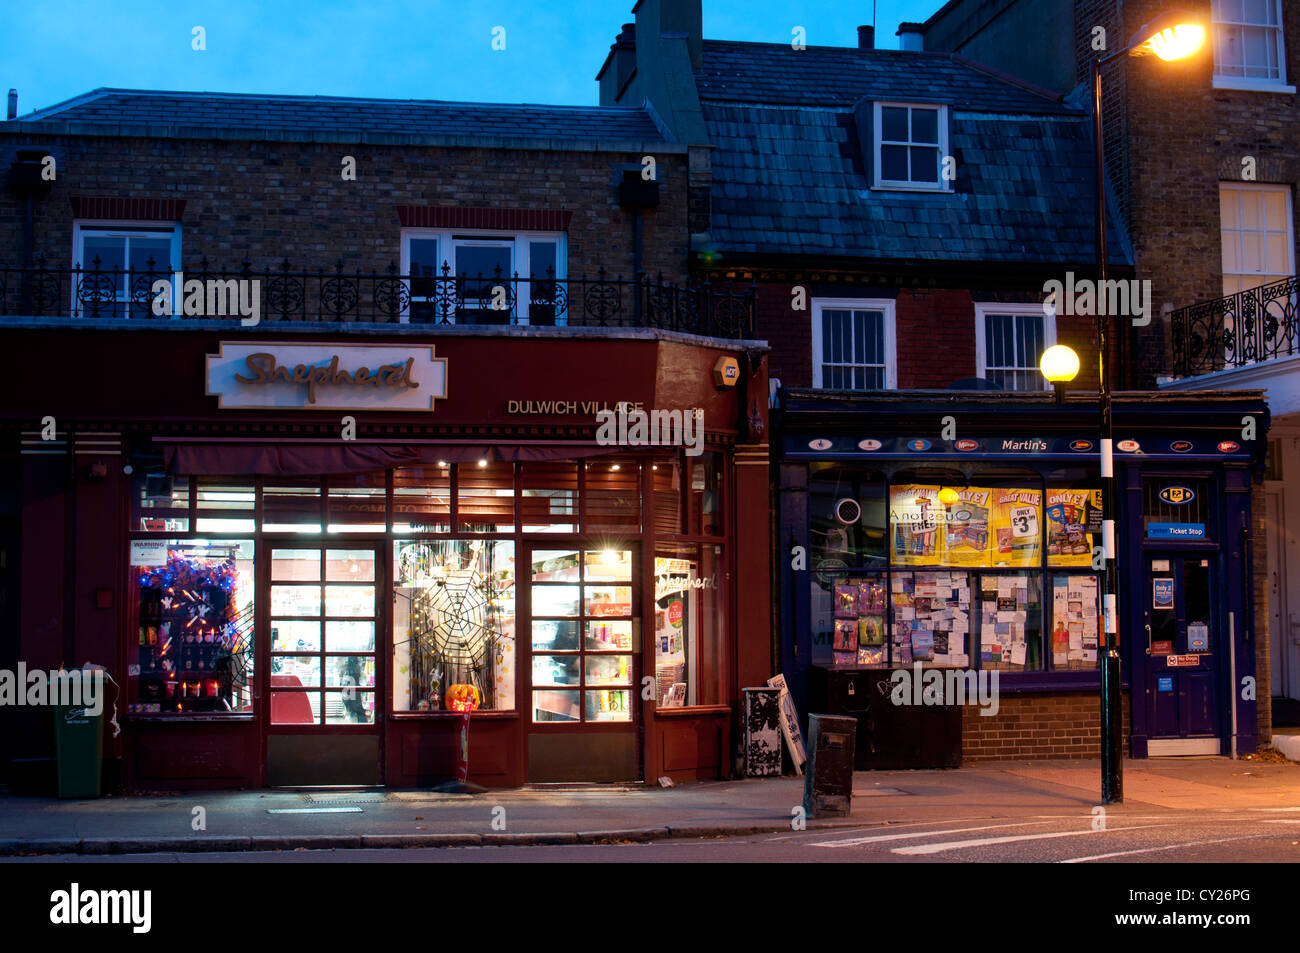 Dulwich Village at night, London, UK Stock Photo